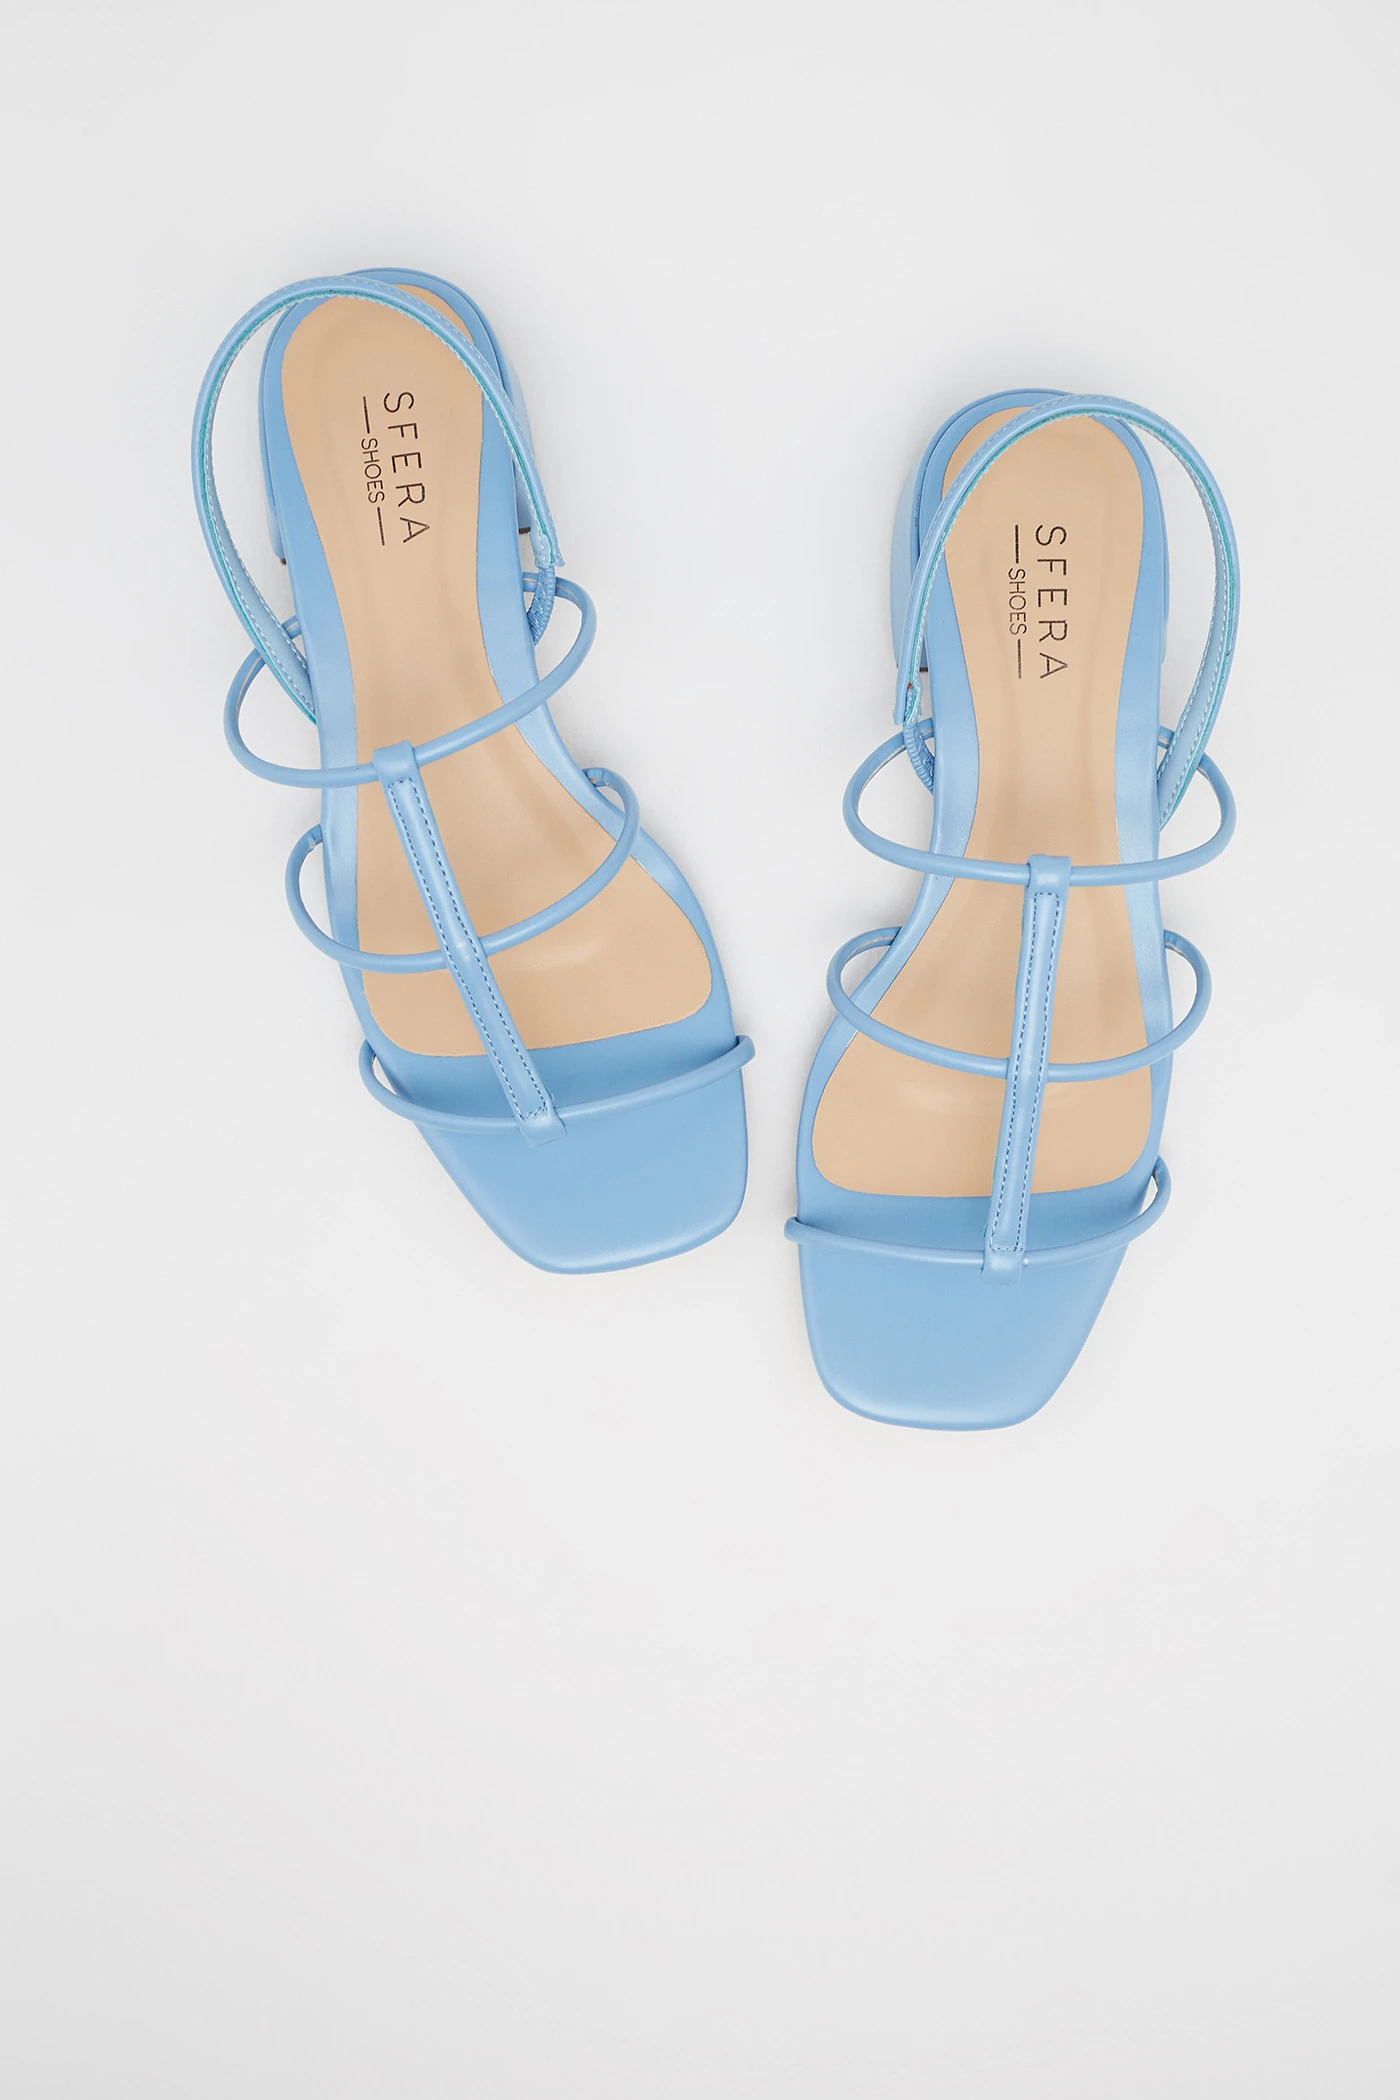 Los invitados Emperador Seguid así Fotos: Las sandalias más bonitas de Sfera (que ya nos hacen soñar con el  verano) se van a convertir en tu calzado cómodo favorito de la temporada |  Mujer Hoy